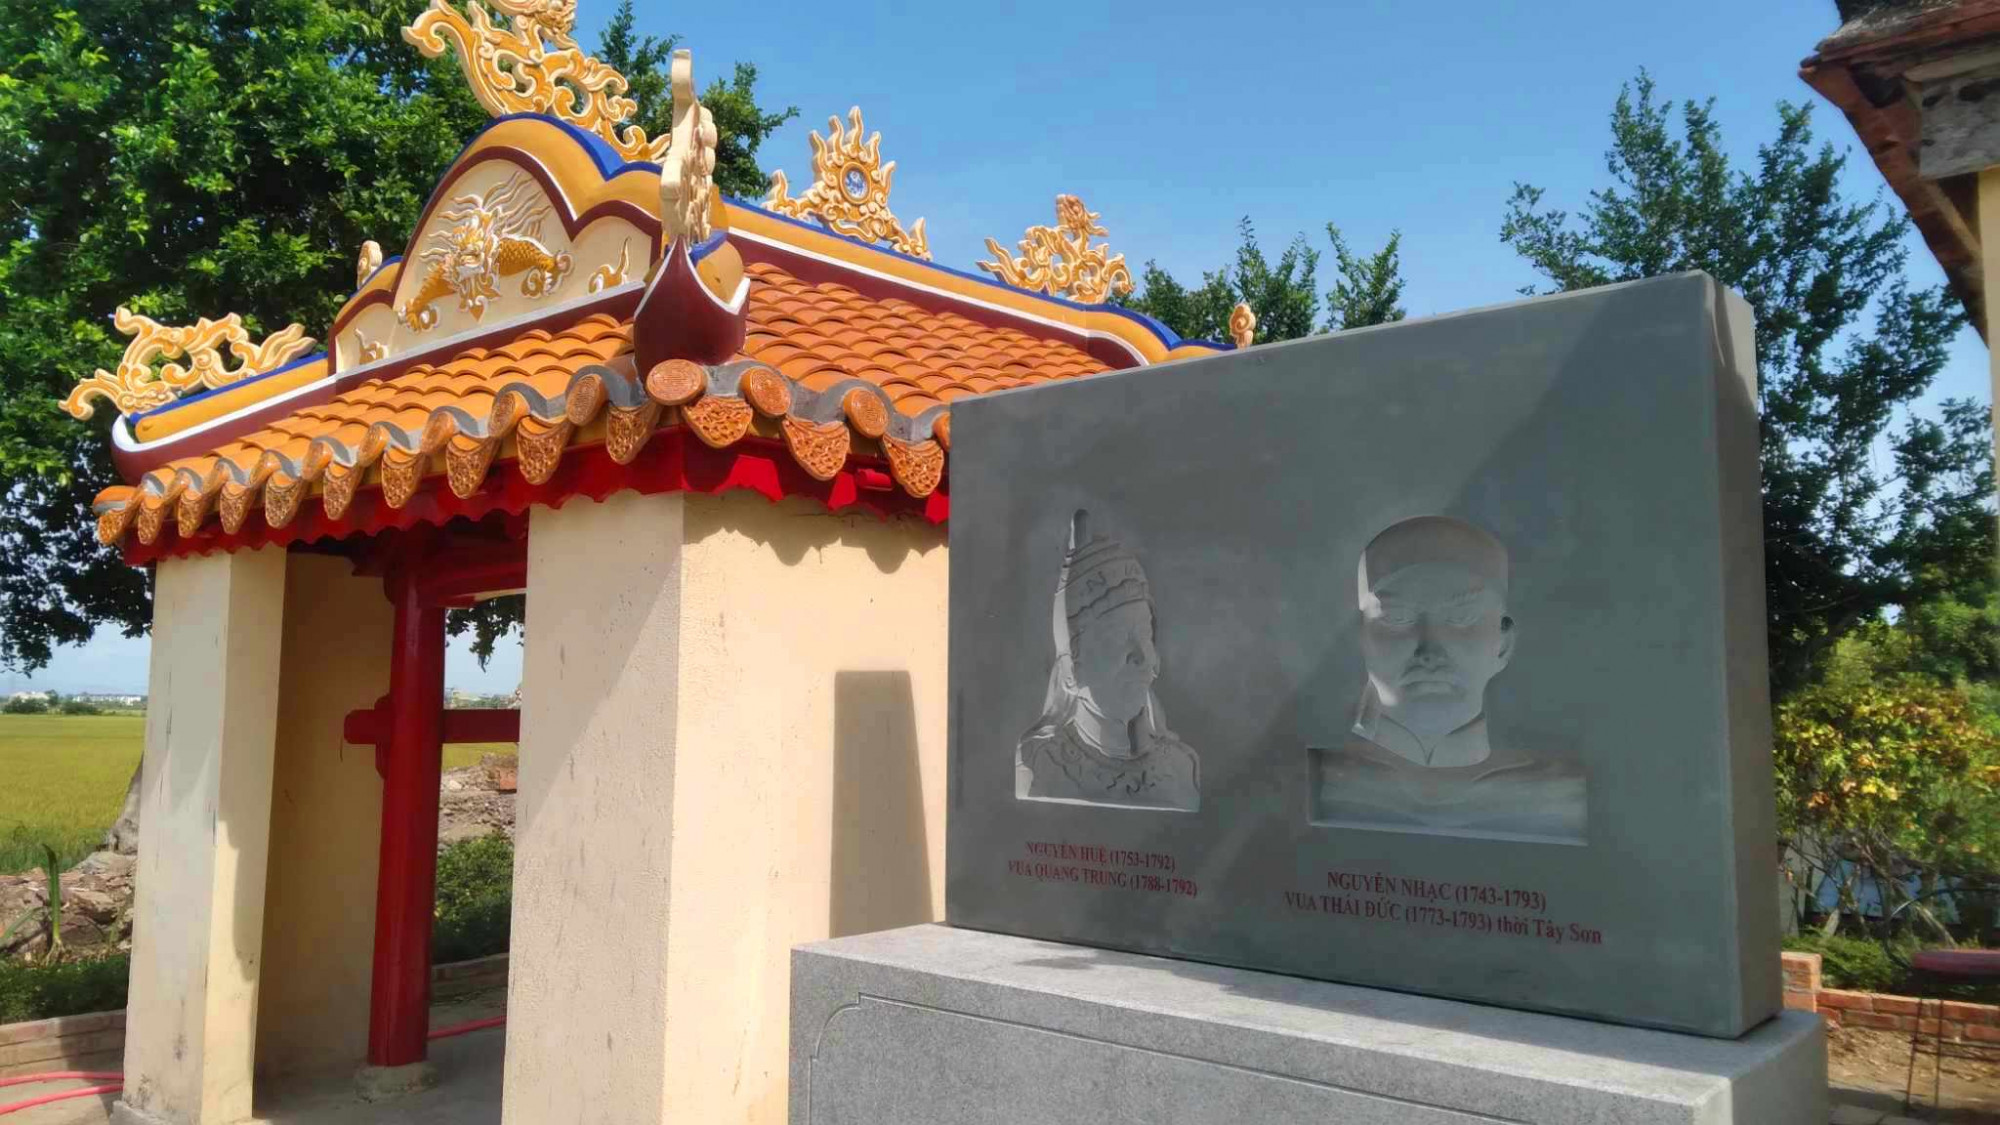 Việc dựng phù điêu hai vua khi chưa có sự đồng thuận của UBND phường Thủy Vân và dân làng Dạ Lê Chánh